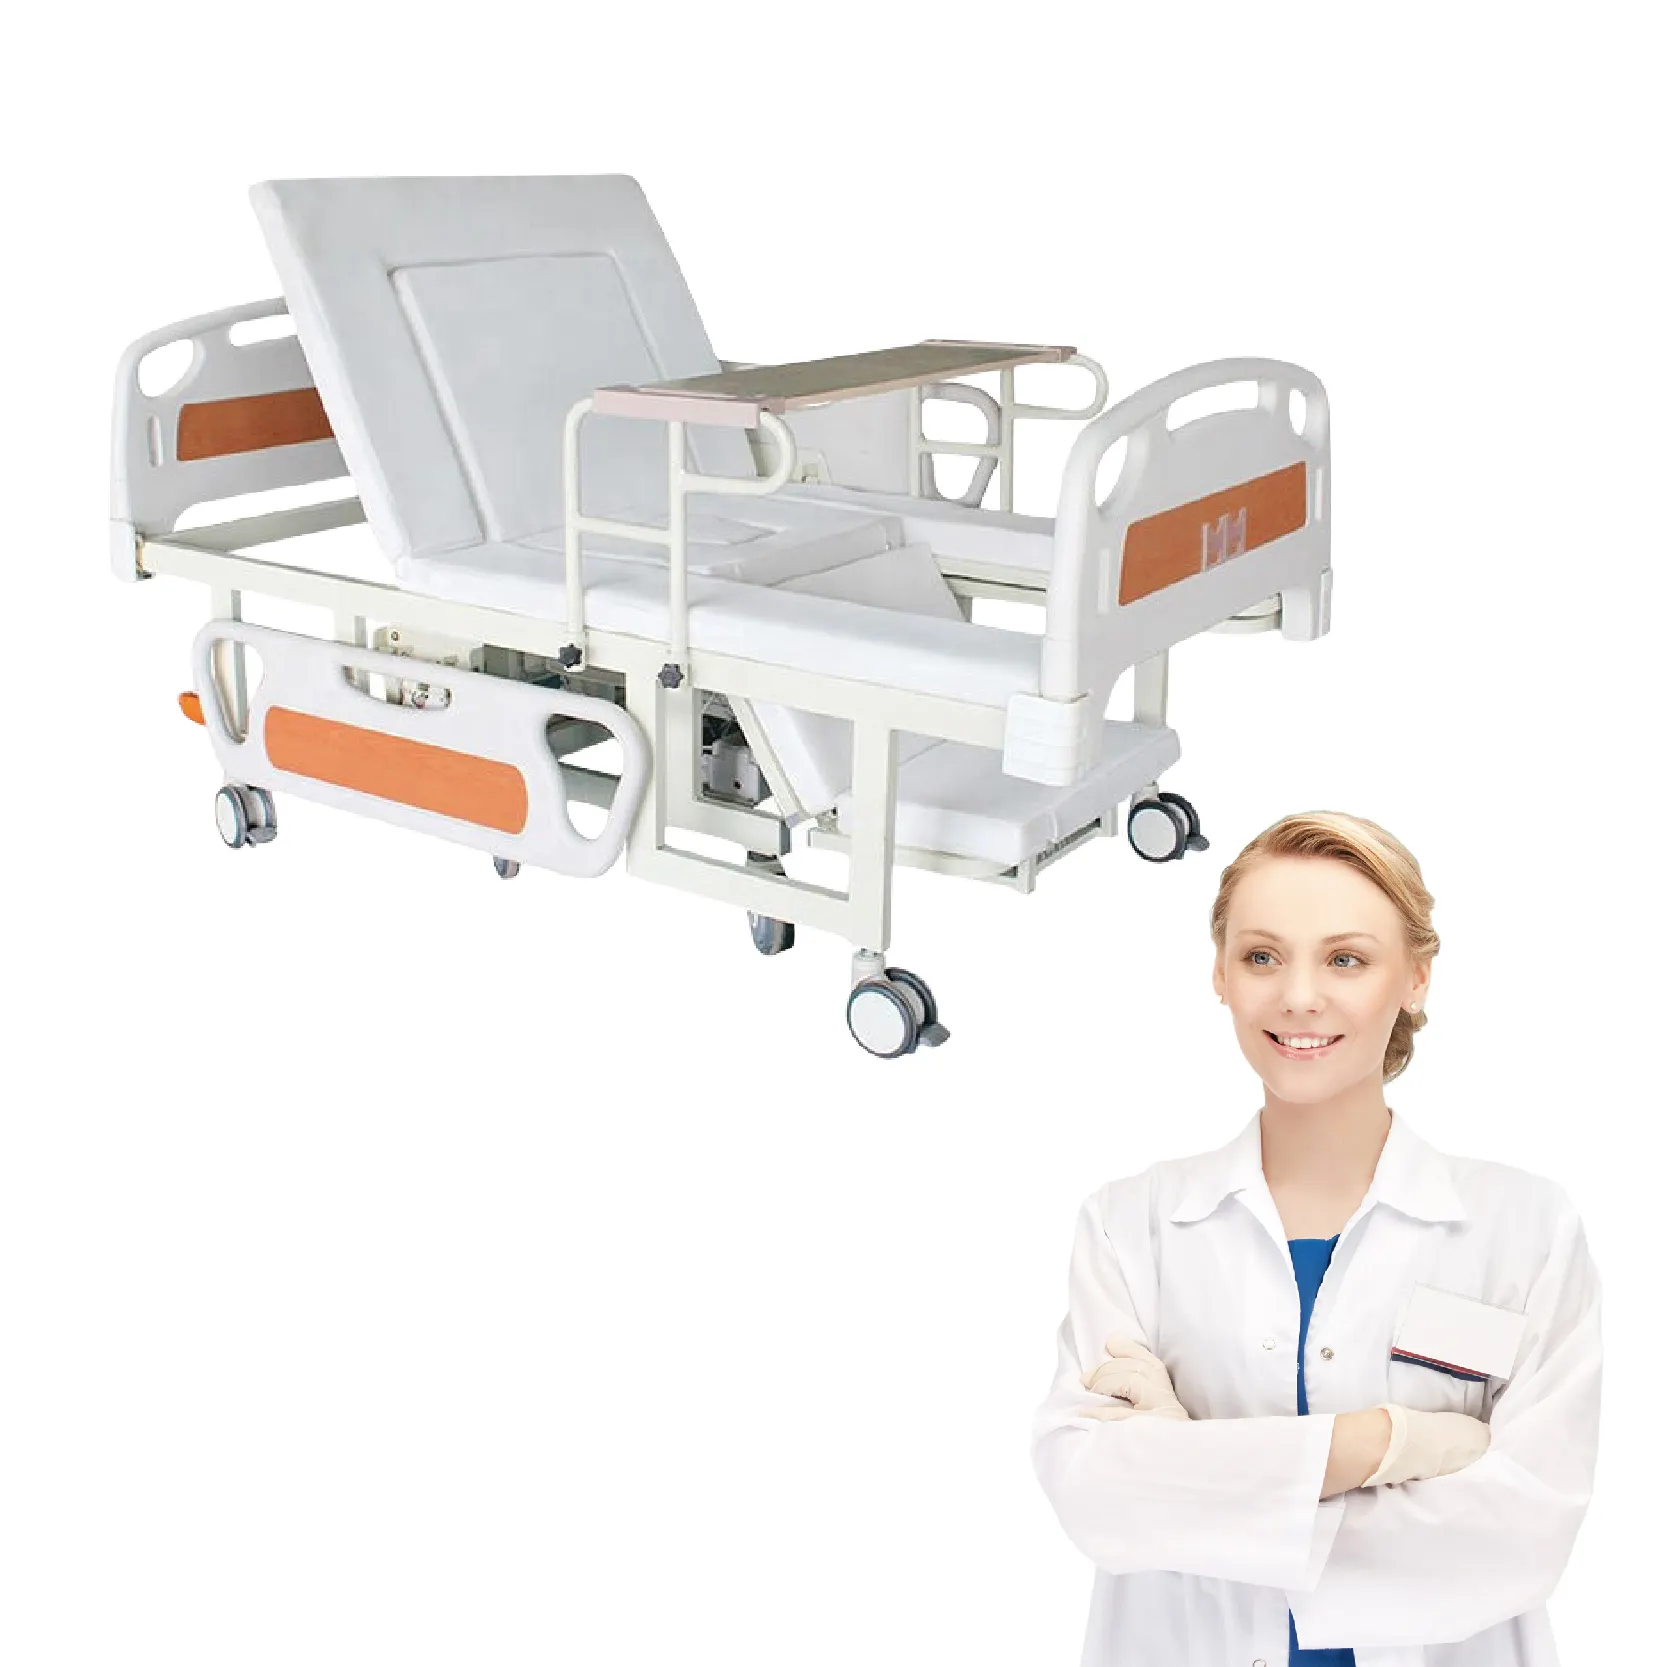 Nuovo arrivo vendita all'ingrosso della fabbrica di assistenza infermieristica medica 2 manovella manuale letto di ospedale con telecomando